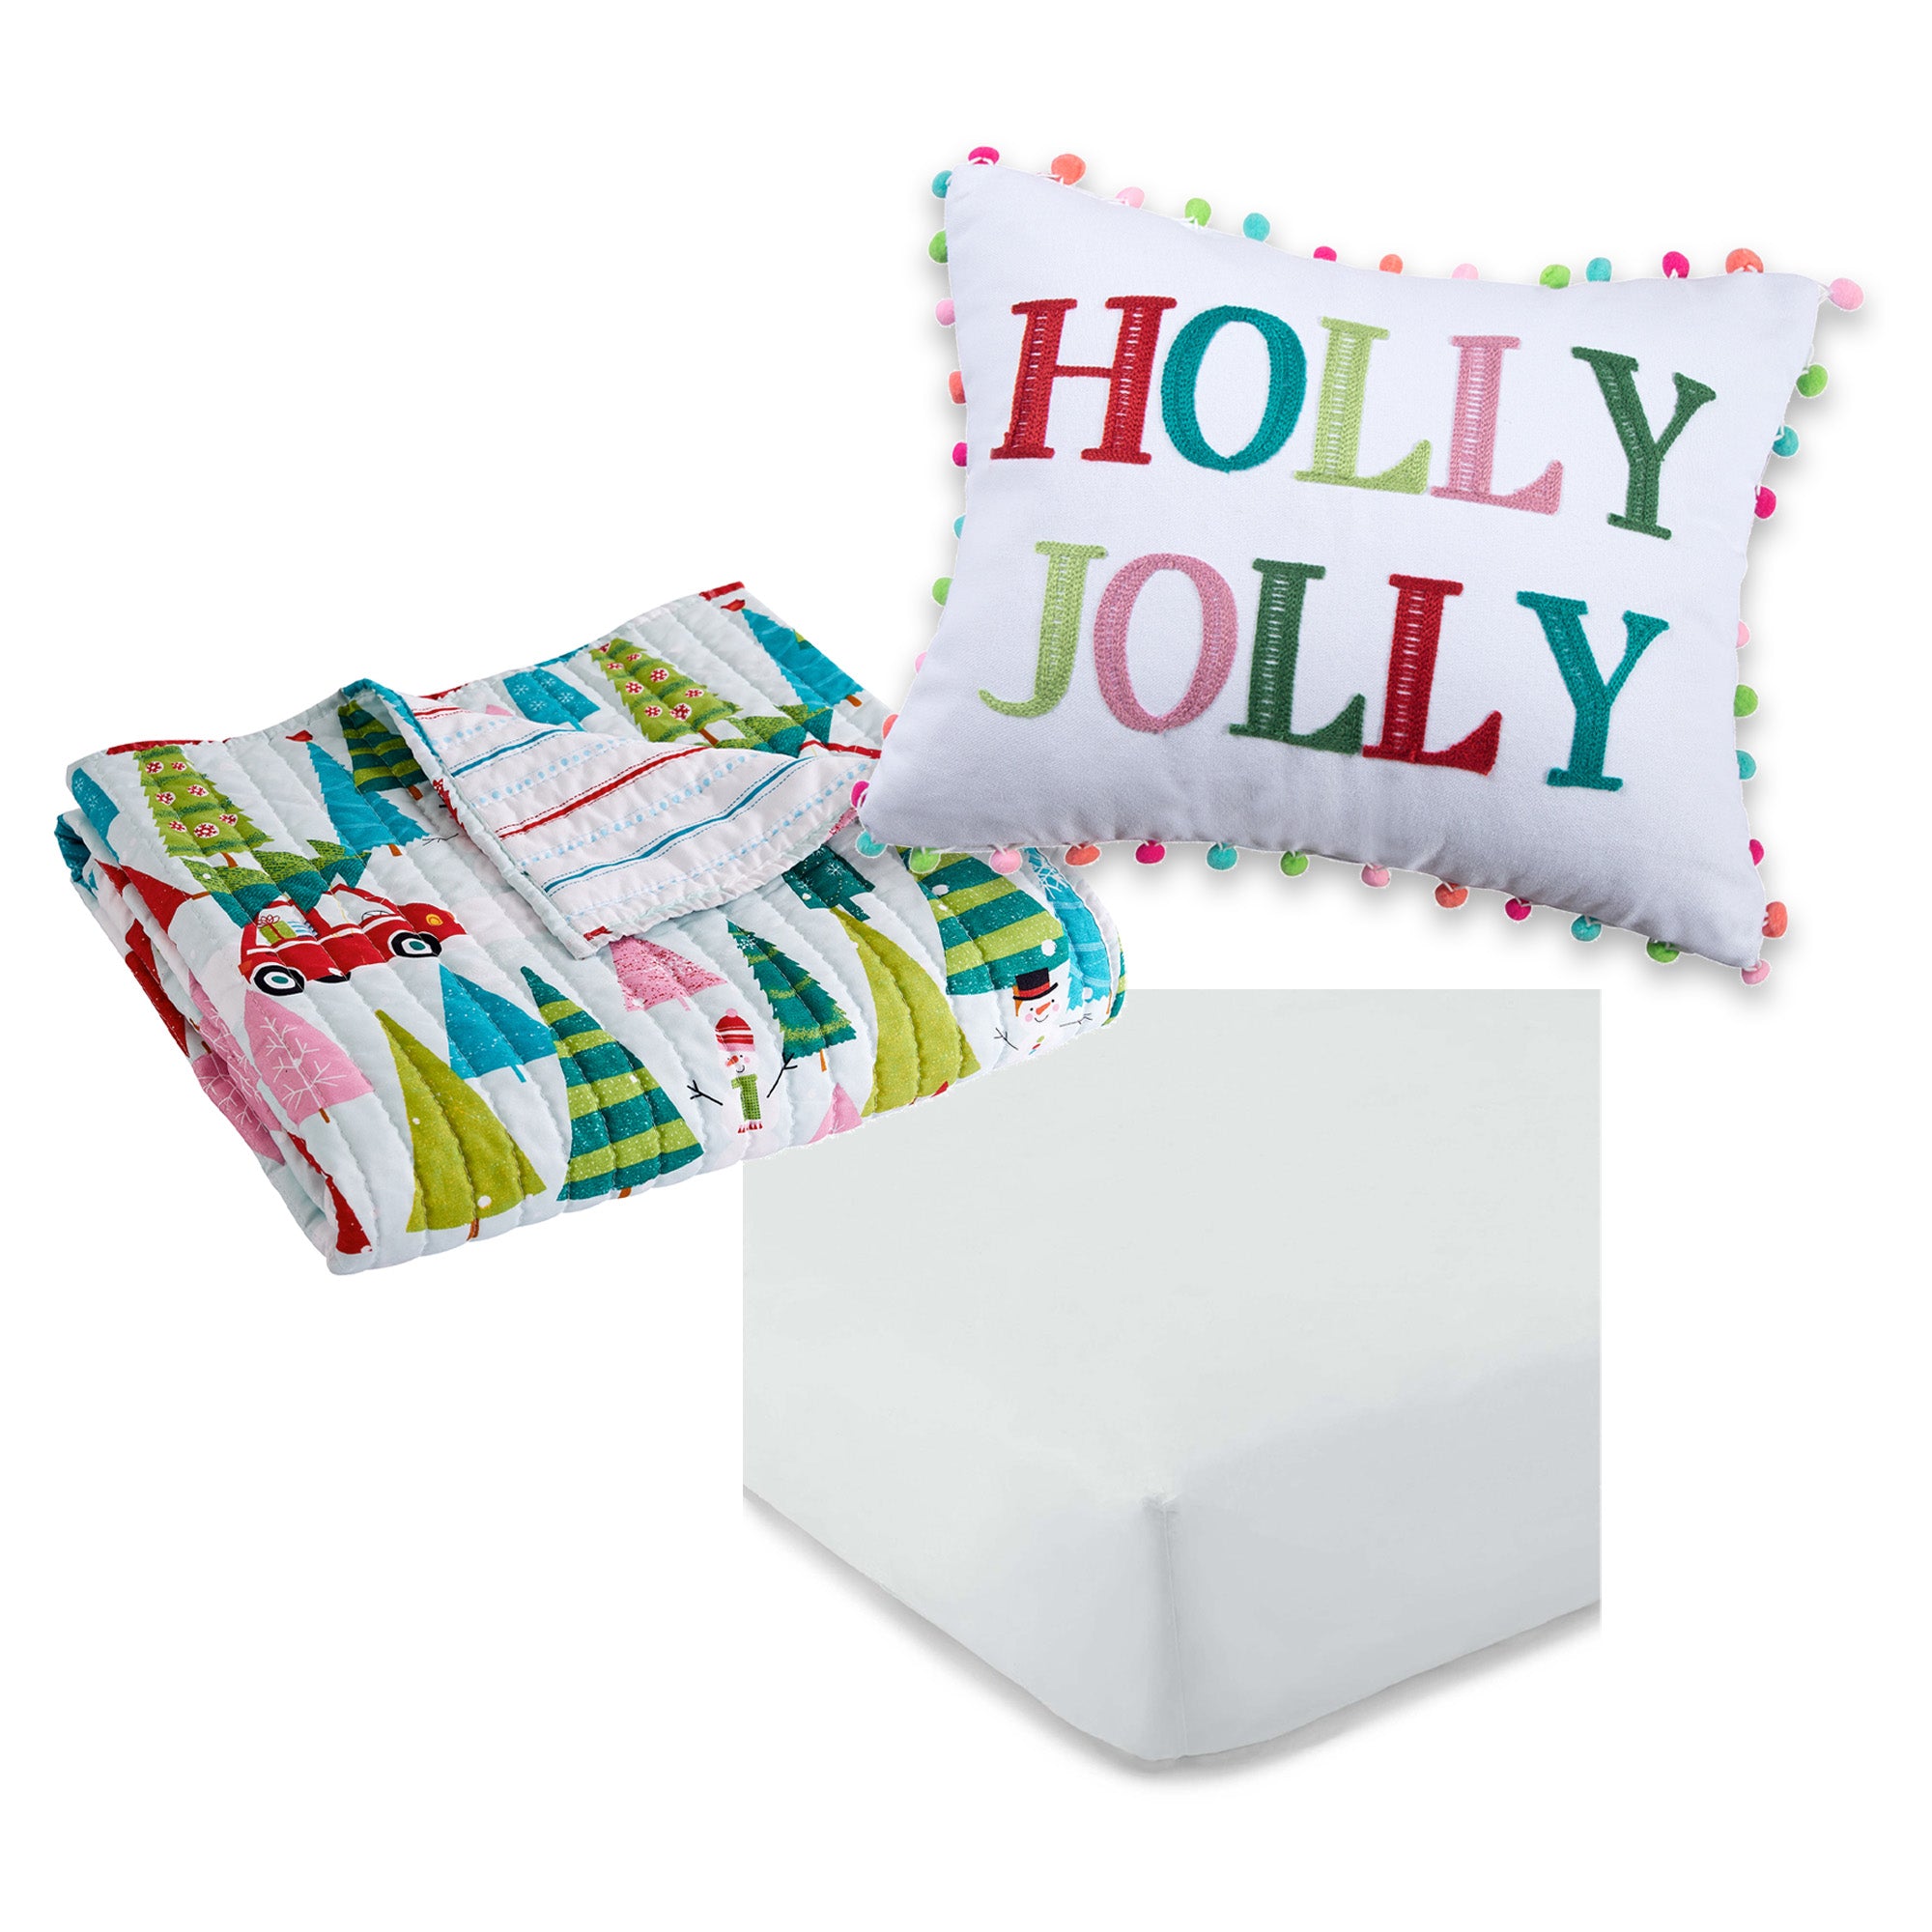 Holly Jolly 3-Piece Toddler Bedding Set